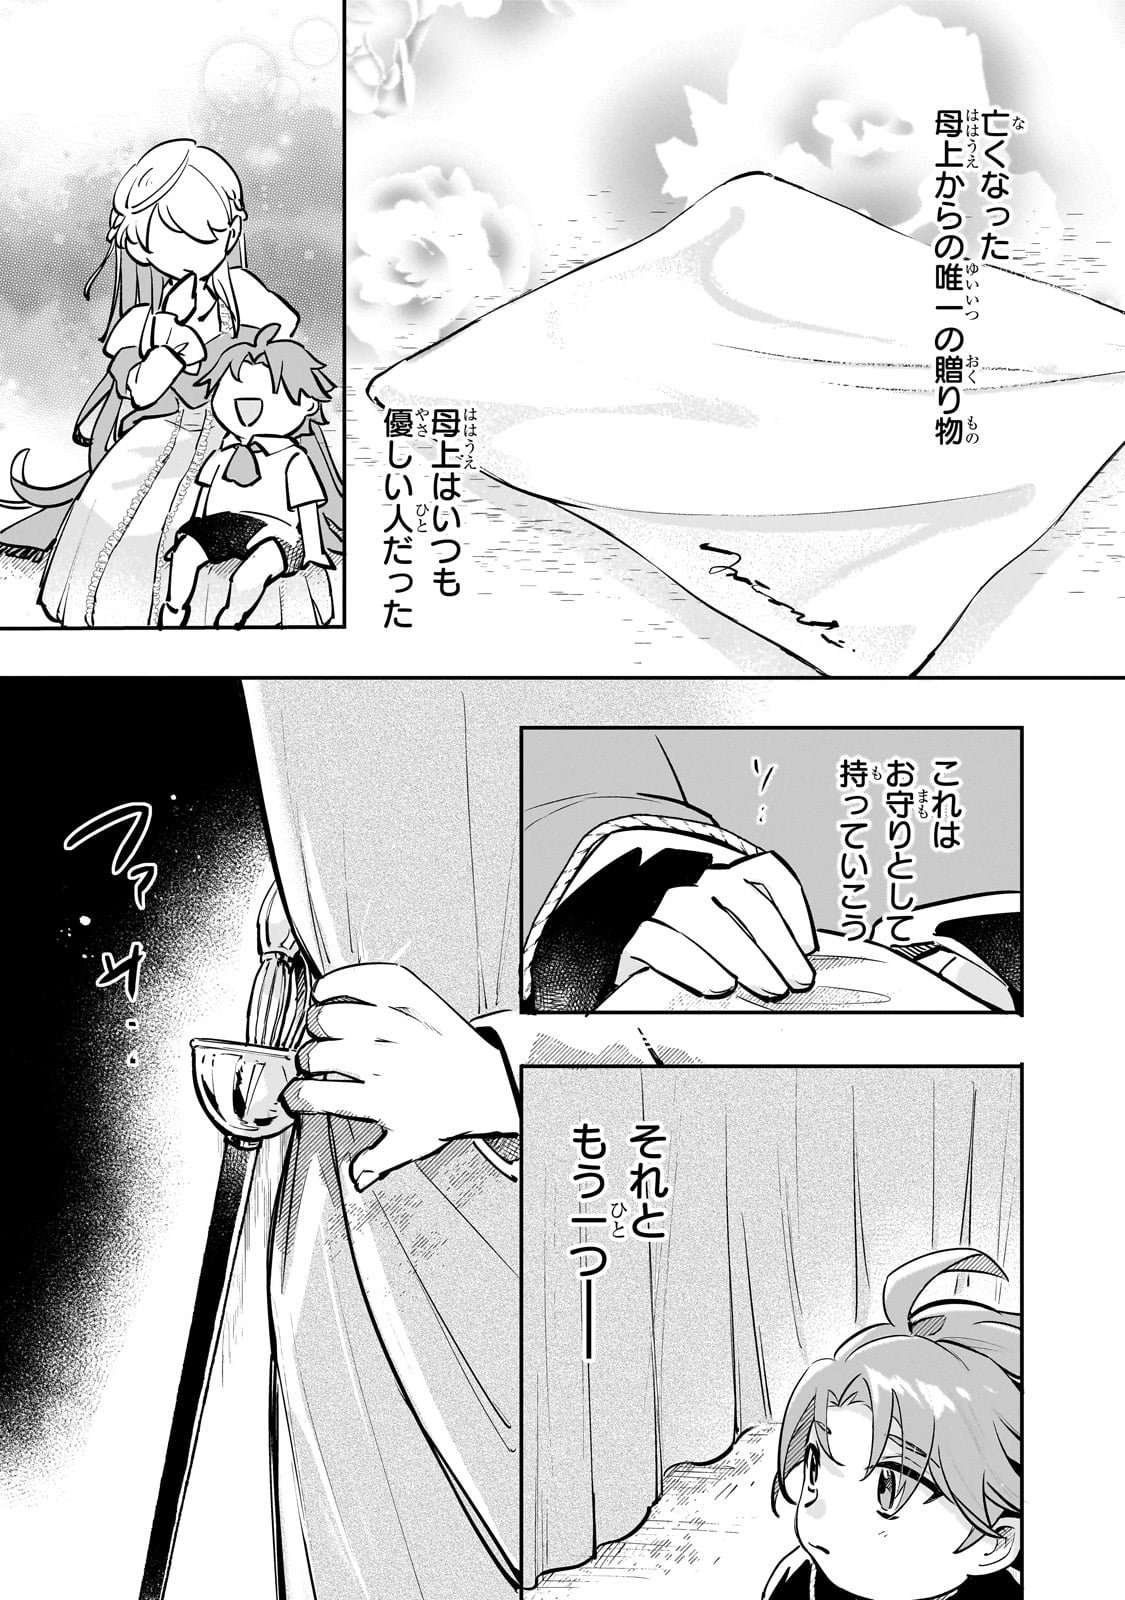 Futoccho Kizoku wa Meikyuu de Waltz wo Odoru - Chapter 1 - Page 16